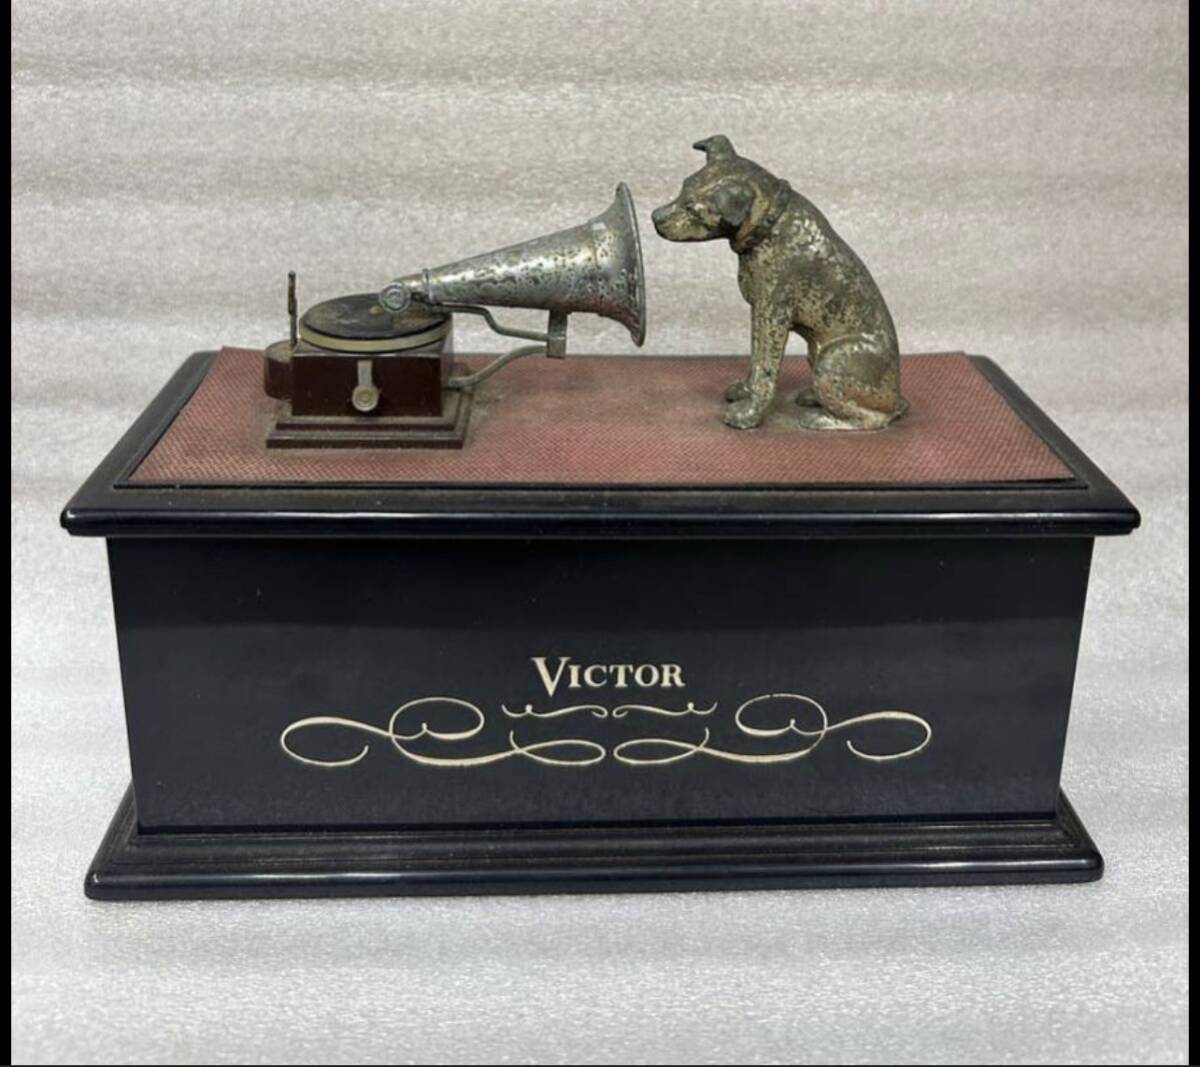  Victor Victor кусачки собака транзистор радио. крышка часть только предметы интерьера украшение украшение 